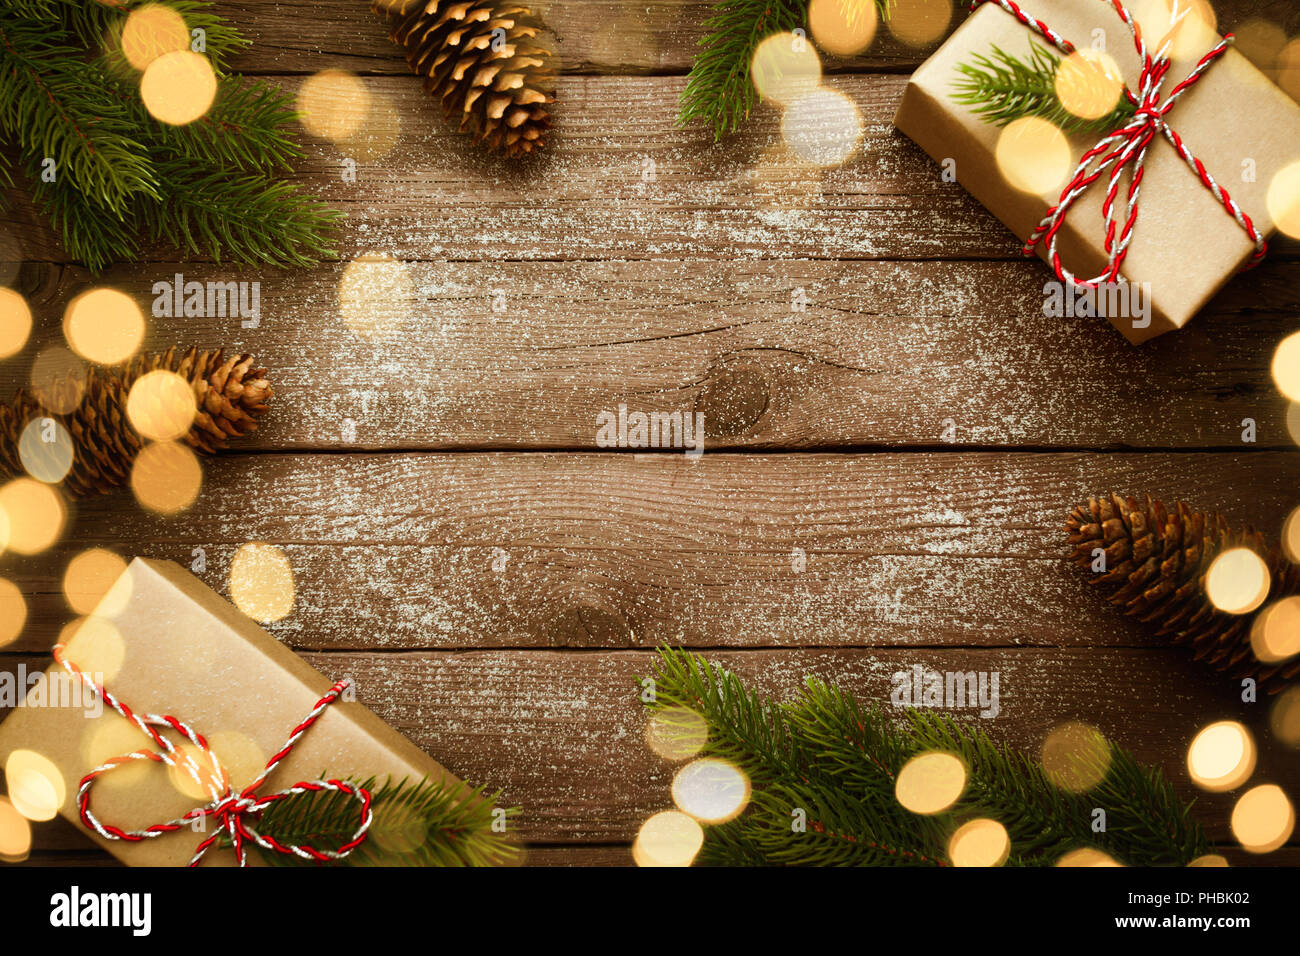 Weihnachten Grenze mit Vintage Geschenke und Dekoration auf alten hölzernen Hintergrund. Stockfoto